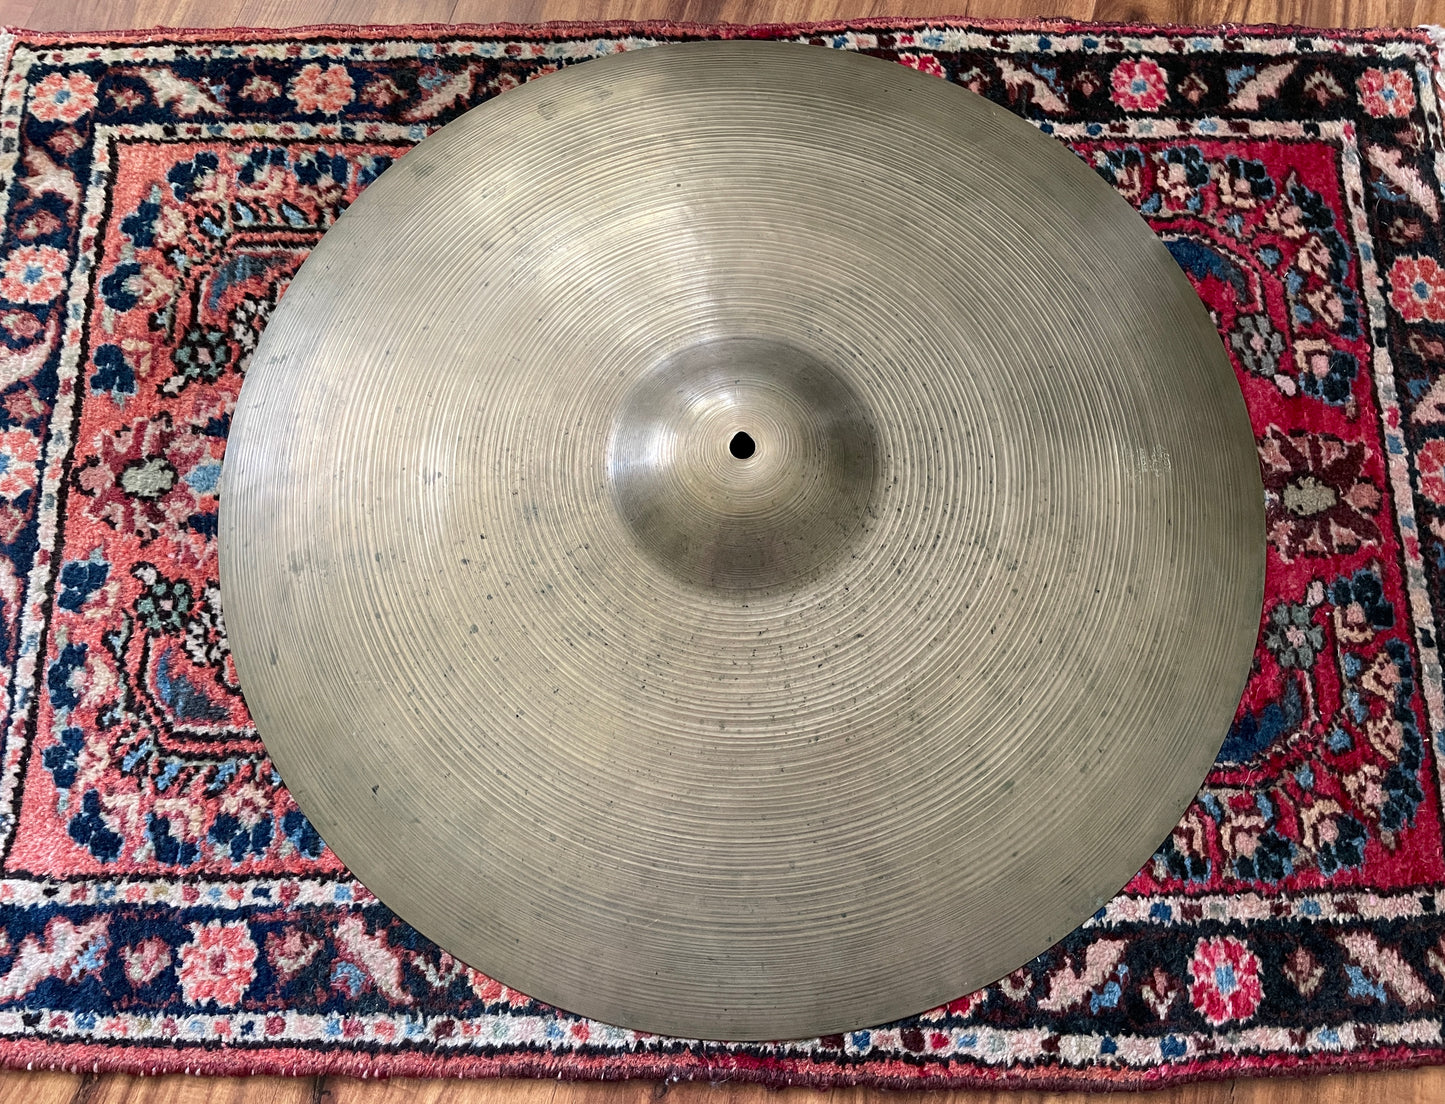 22" Zildjian A 1960s Ride Cymbal 2554g #778 *Video Demo*